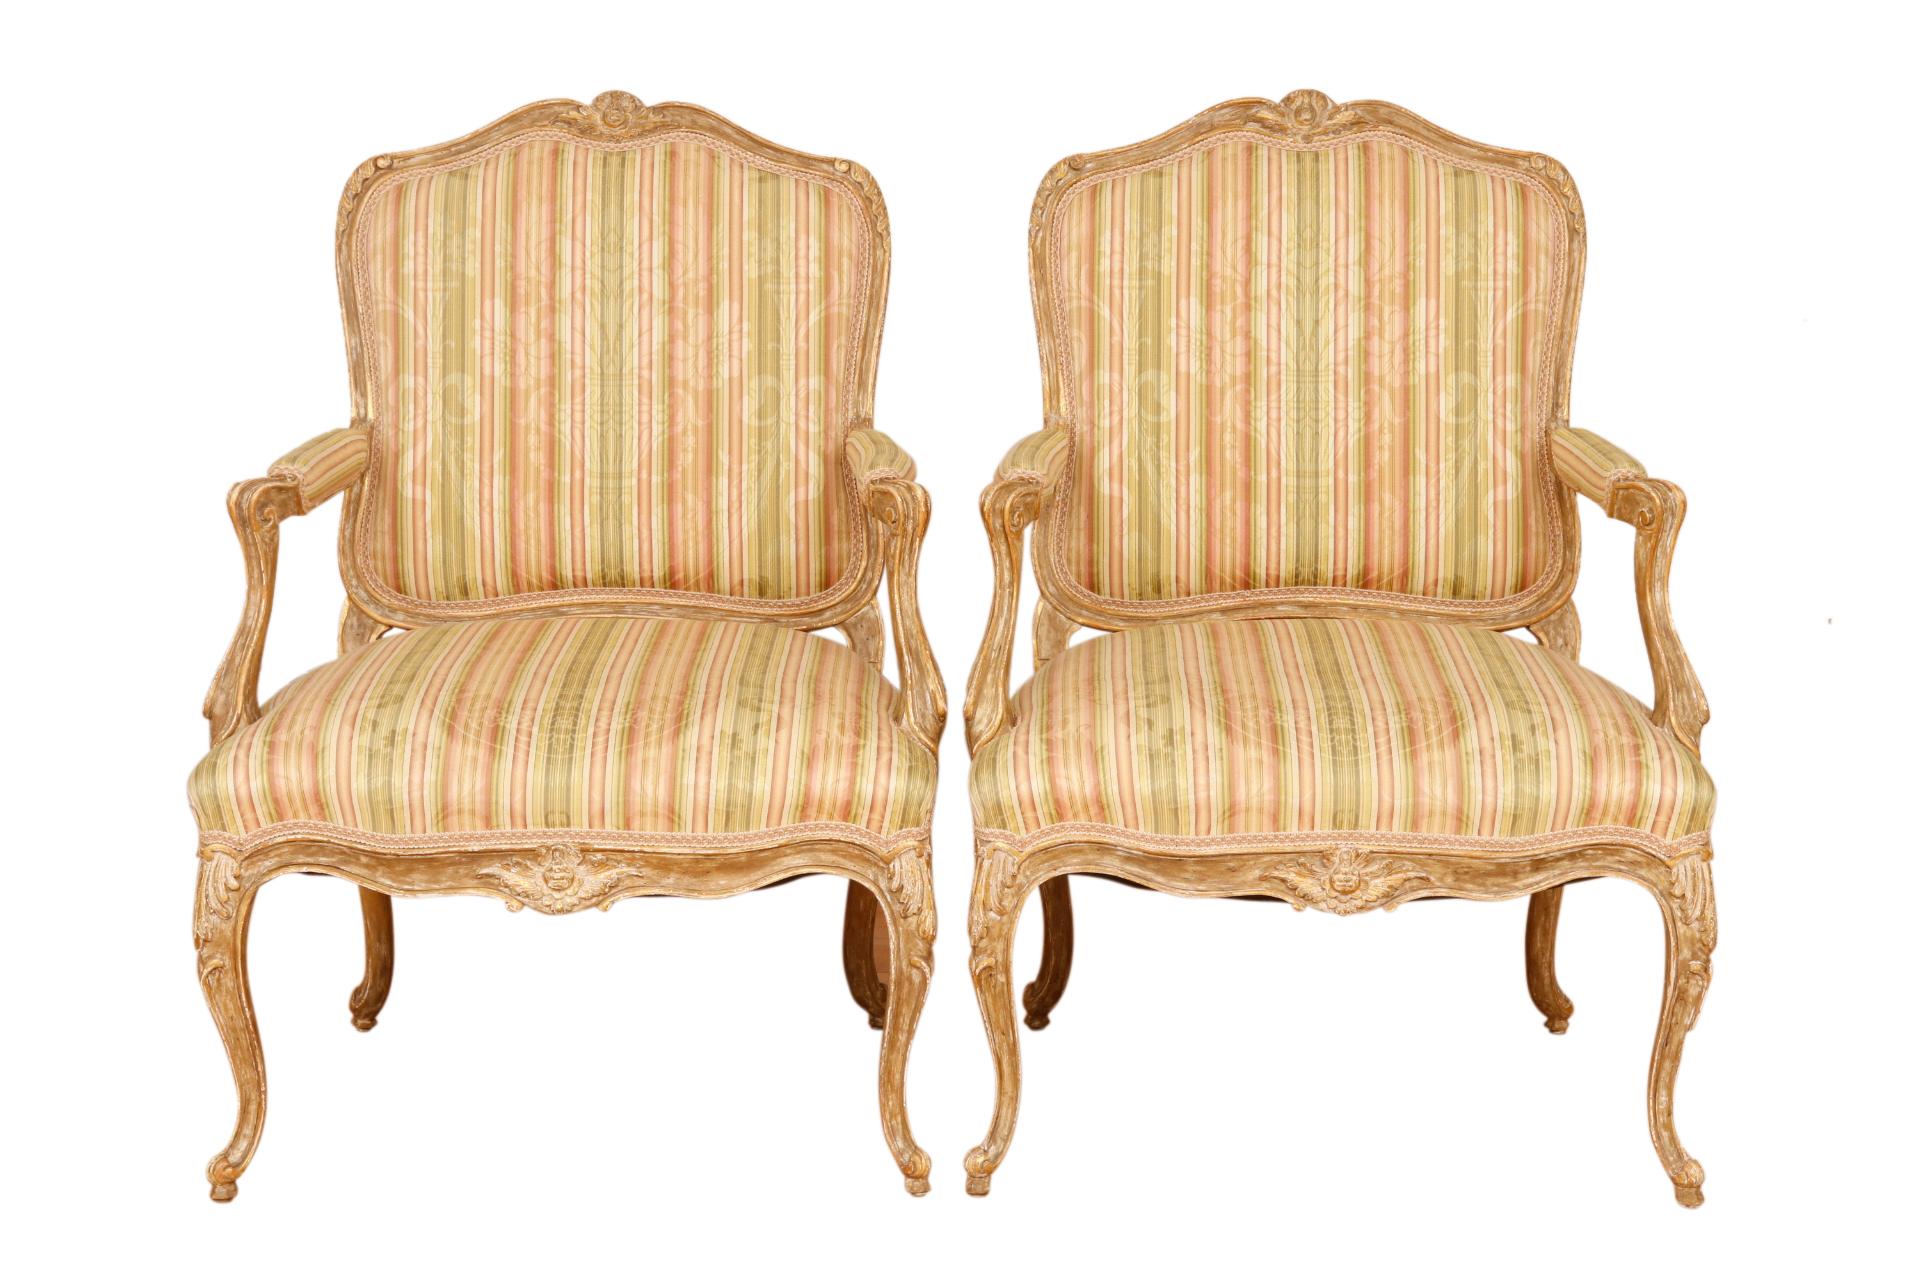 Une paire de fauteuils français de style Louis XV à la Reine. Les sièges sont recouverts d'un brocart rayé en soie, fixé par une ganse tressée. Un motif classique de vase floral et de ruban est superposé à des rayures verticales de couleur sauge,